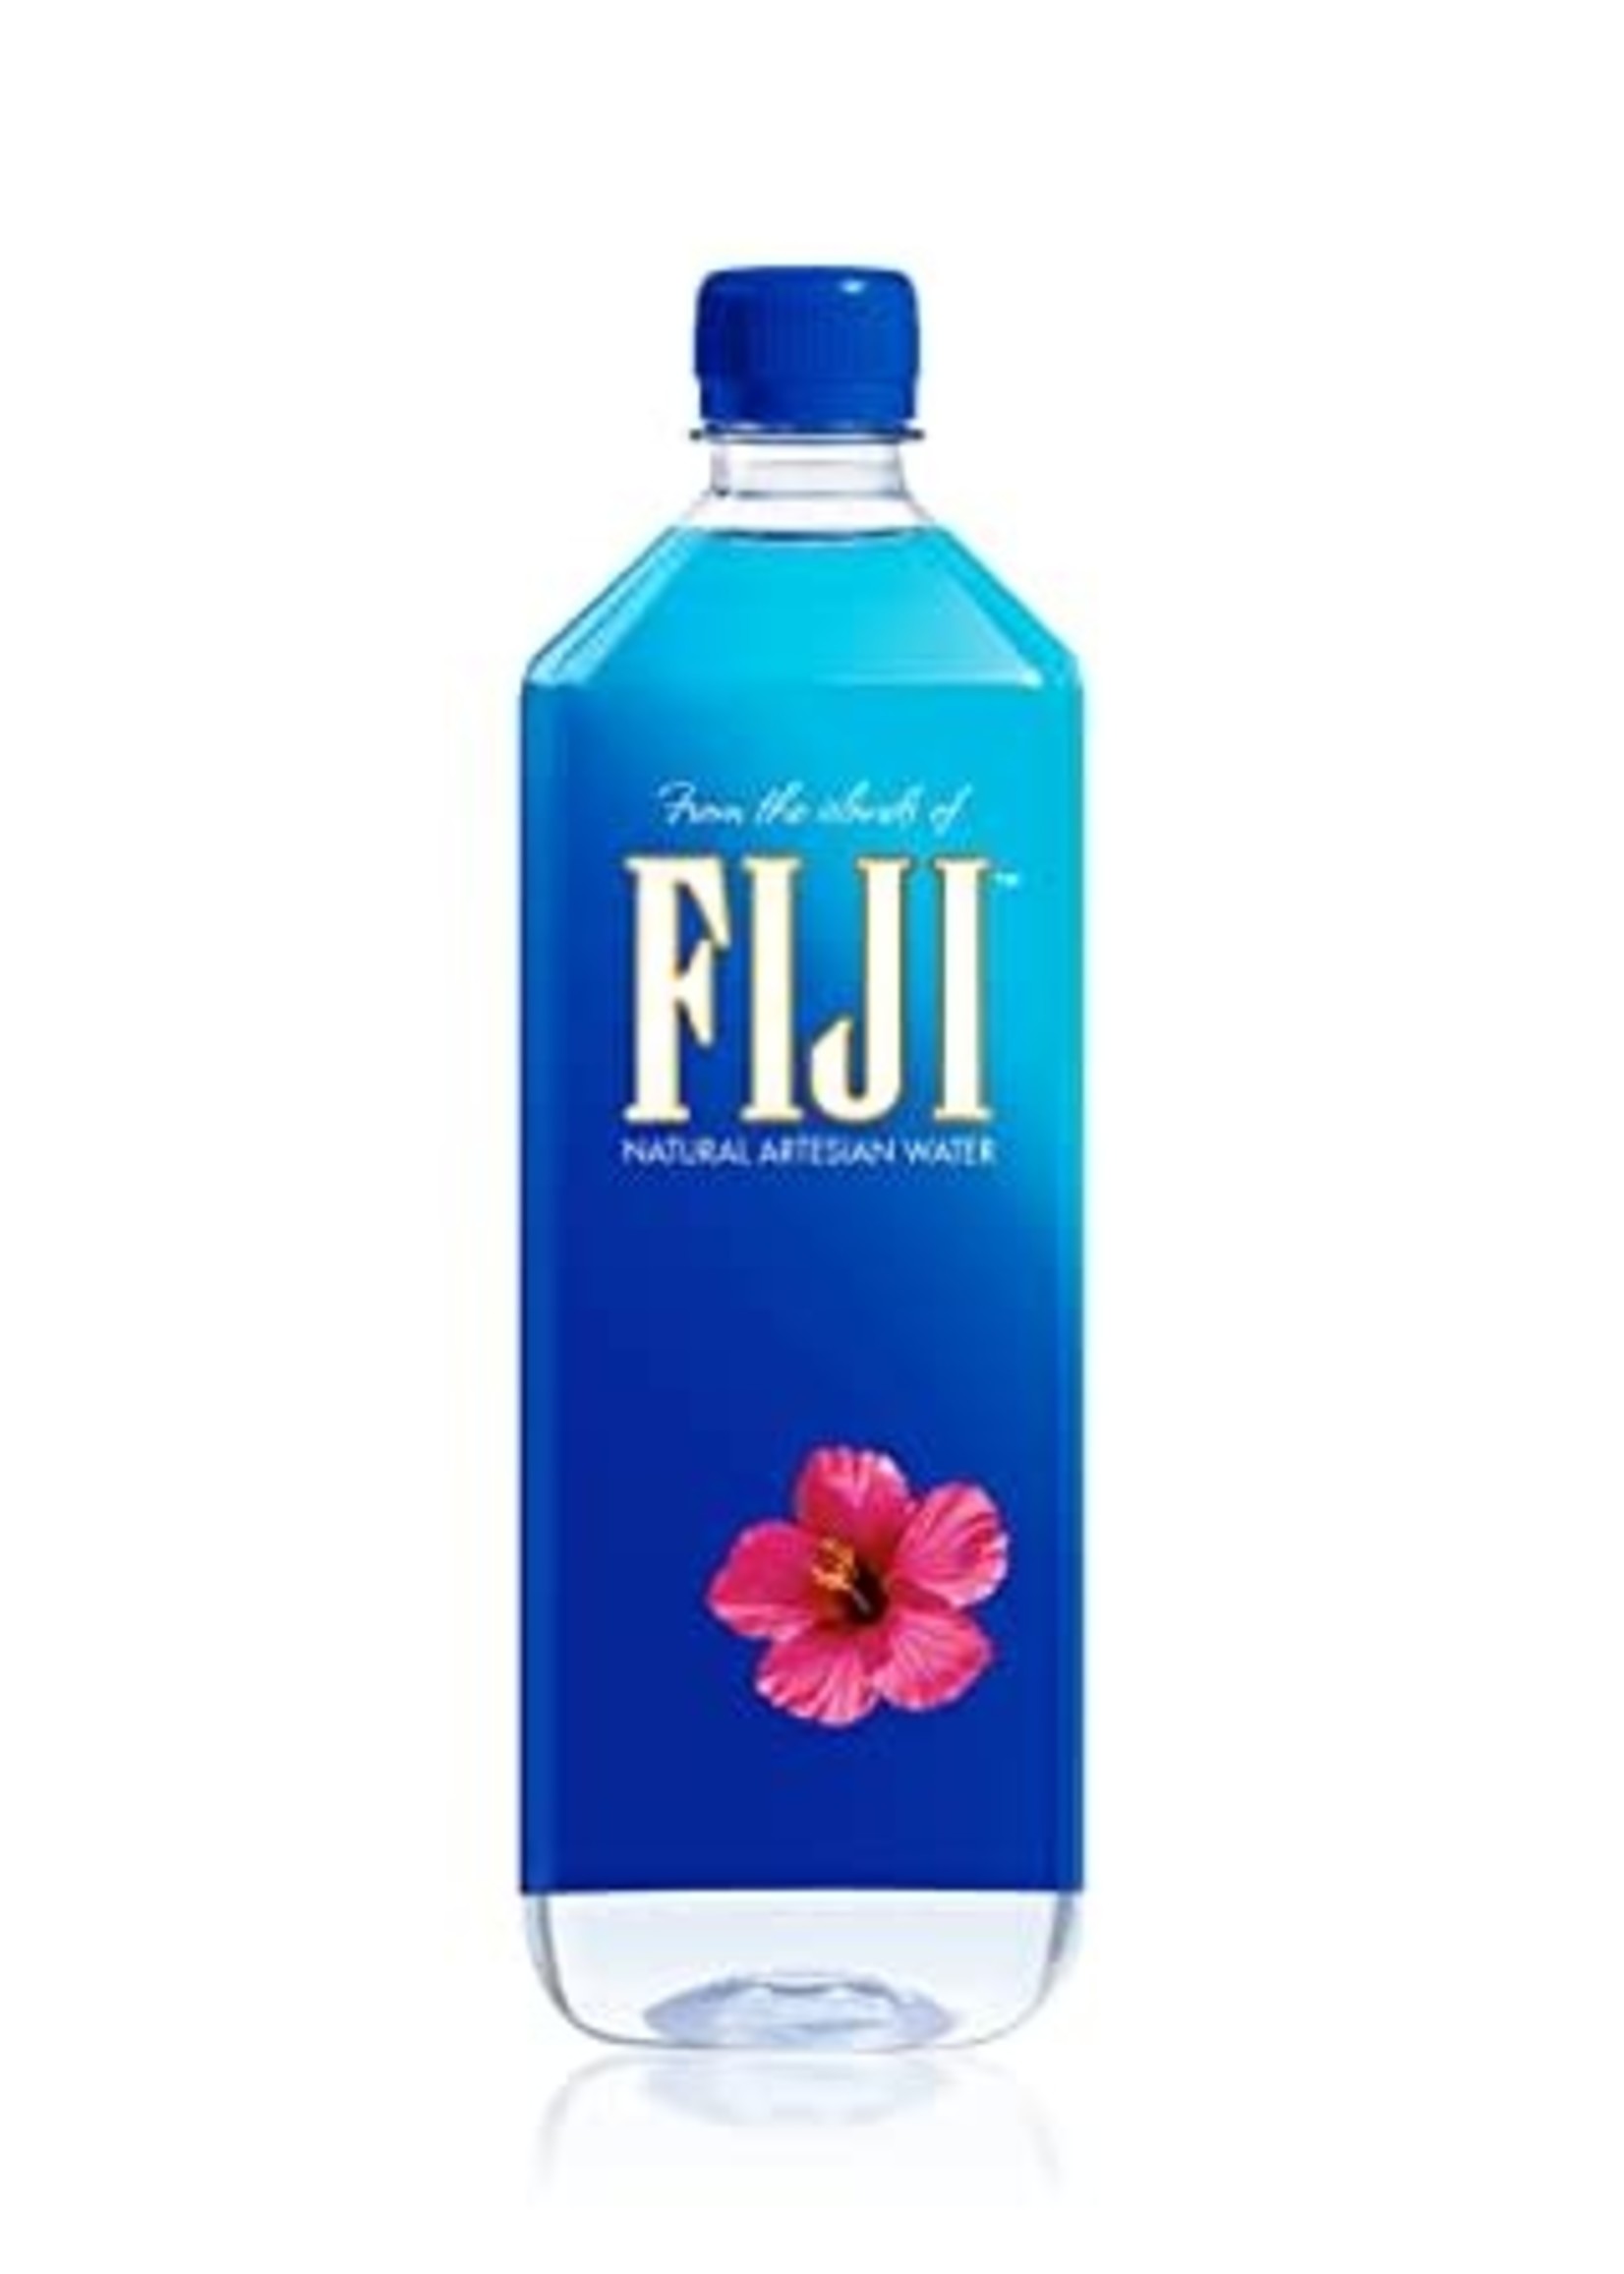 FIJI FIJI	WATER	1.0L